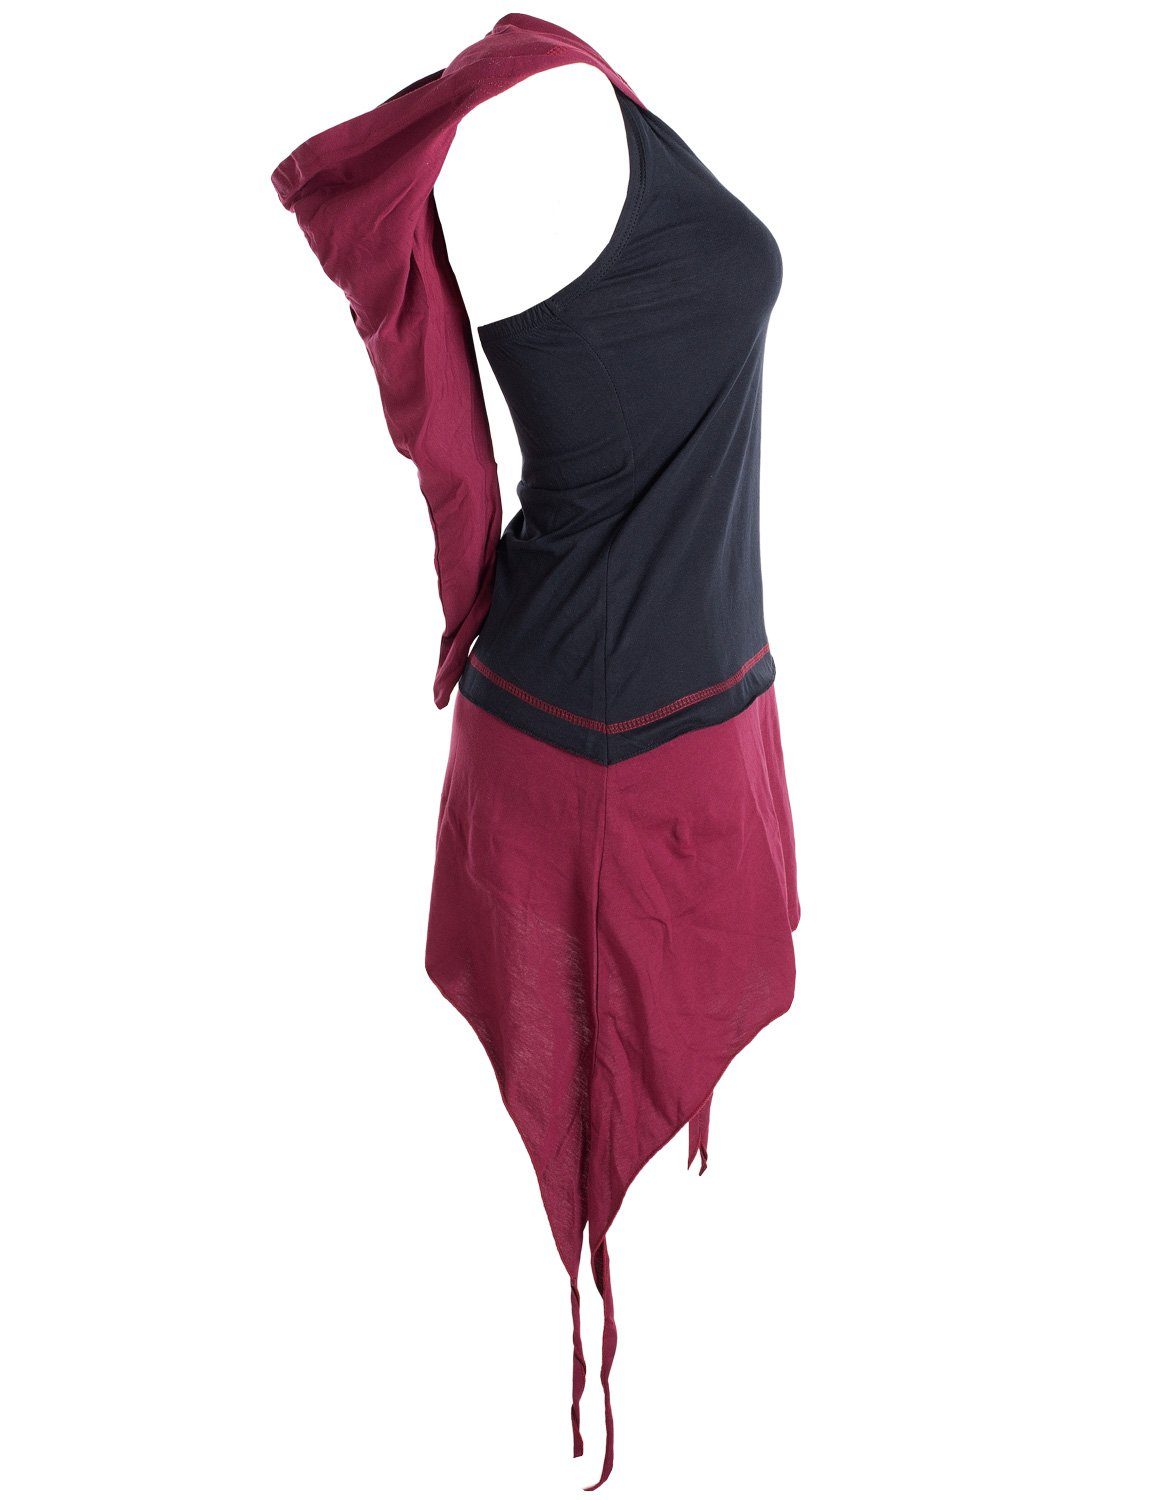 Vishes Neckholderkleid Eco Style Zipfelkapuzen aus Goa Elfen, Neckholder Hippie, Boho, Biobaumwolle schwarz-dunkelrot